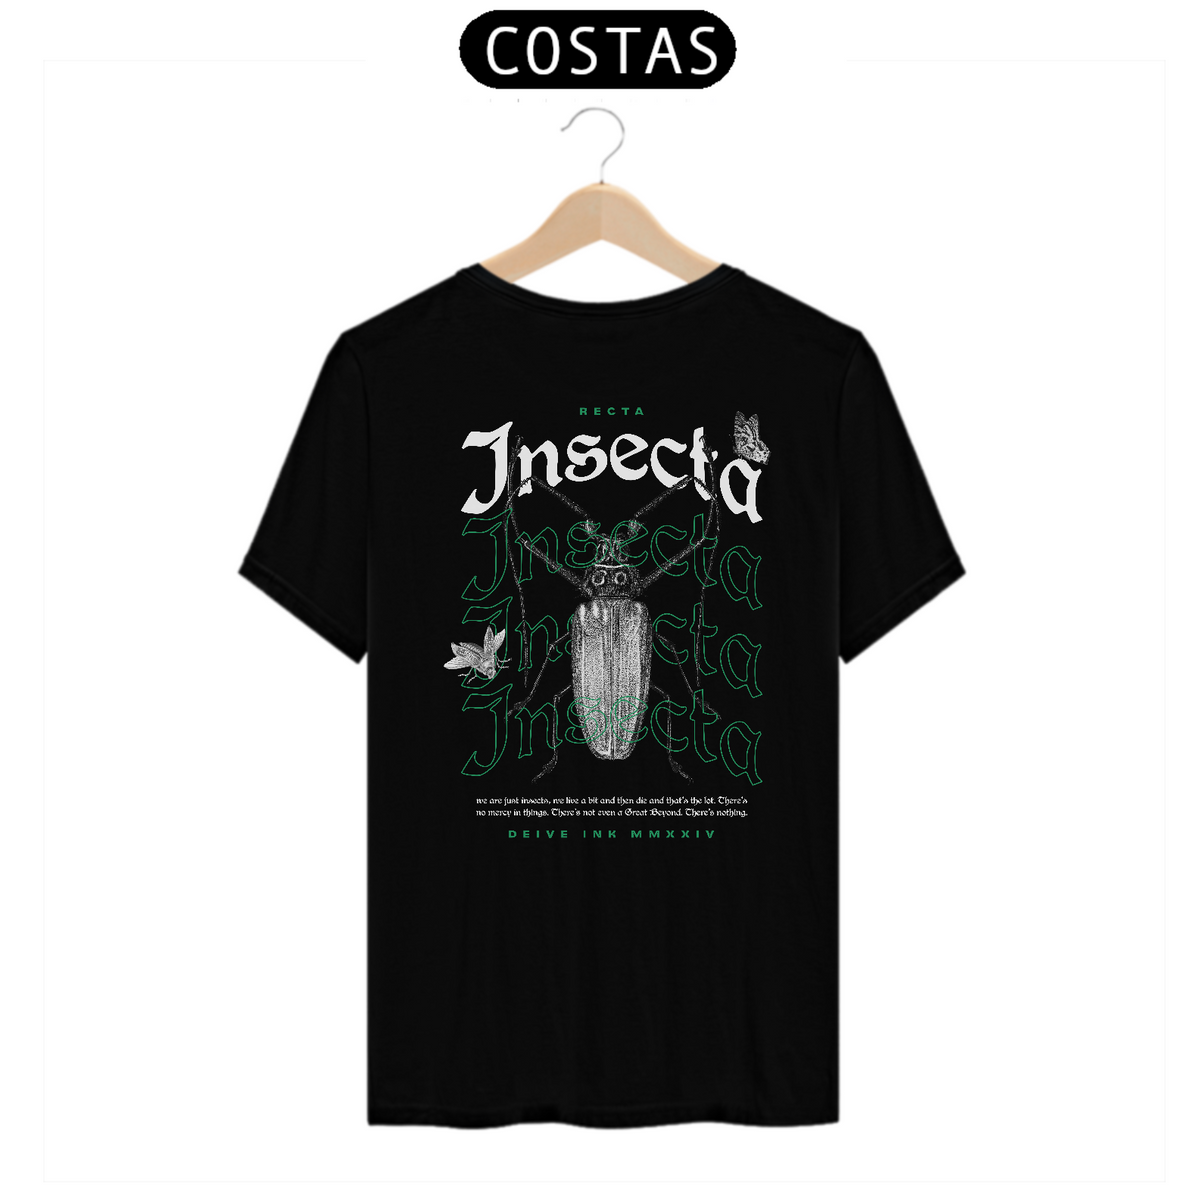 Nome do produto: Camiseta Recta Insecta